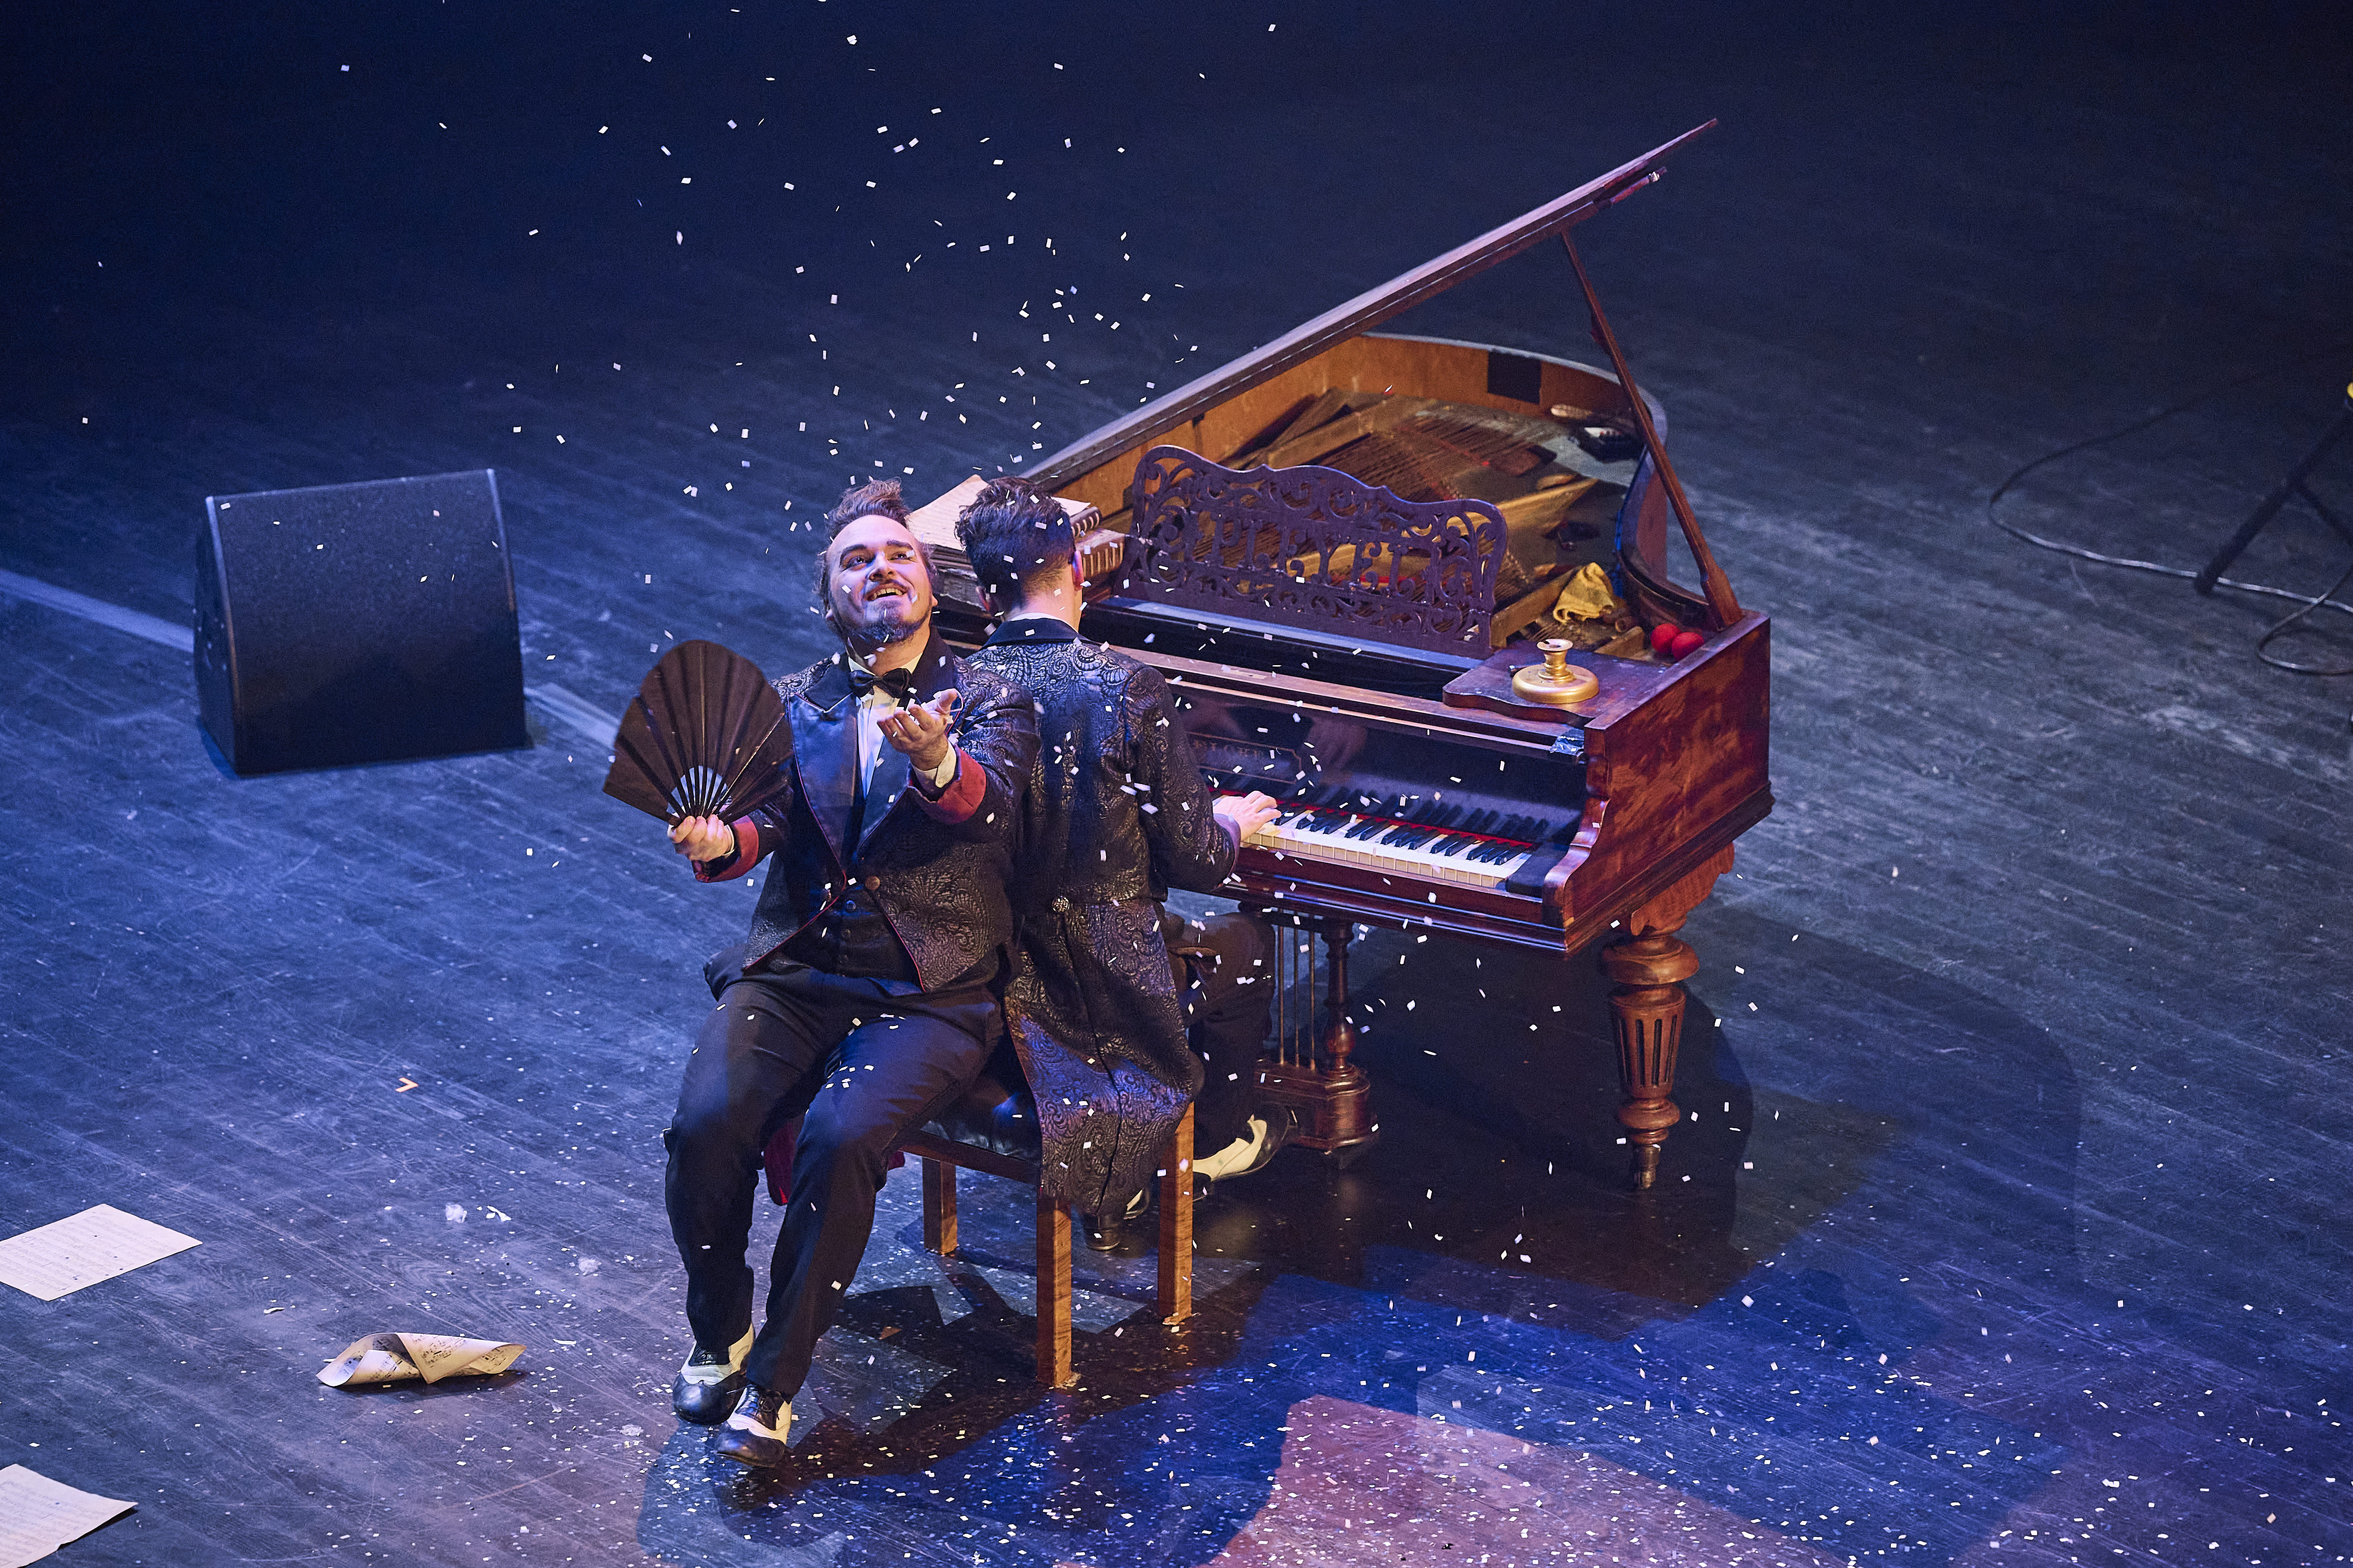 Les Virtuoses, un spectacle plein de musique, de rire et de magie © Stéphane Audran